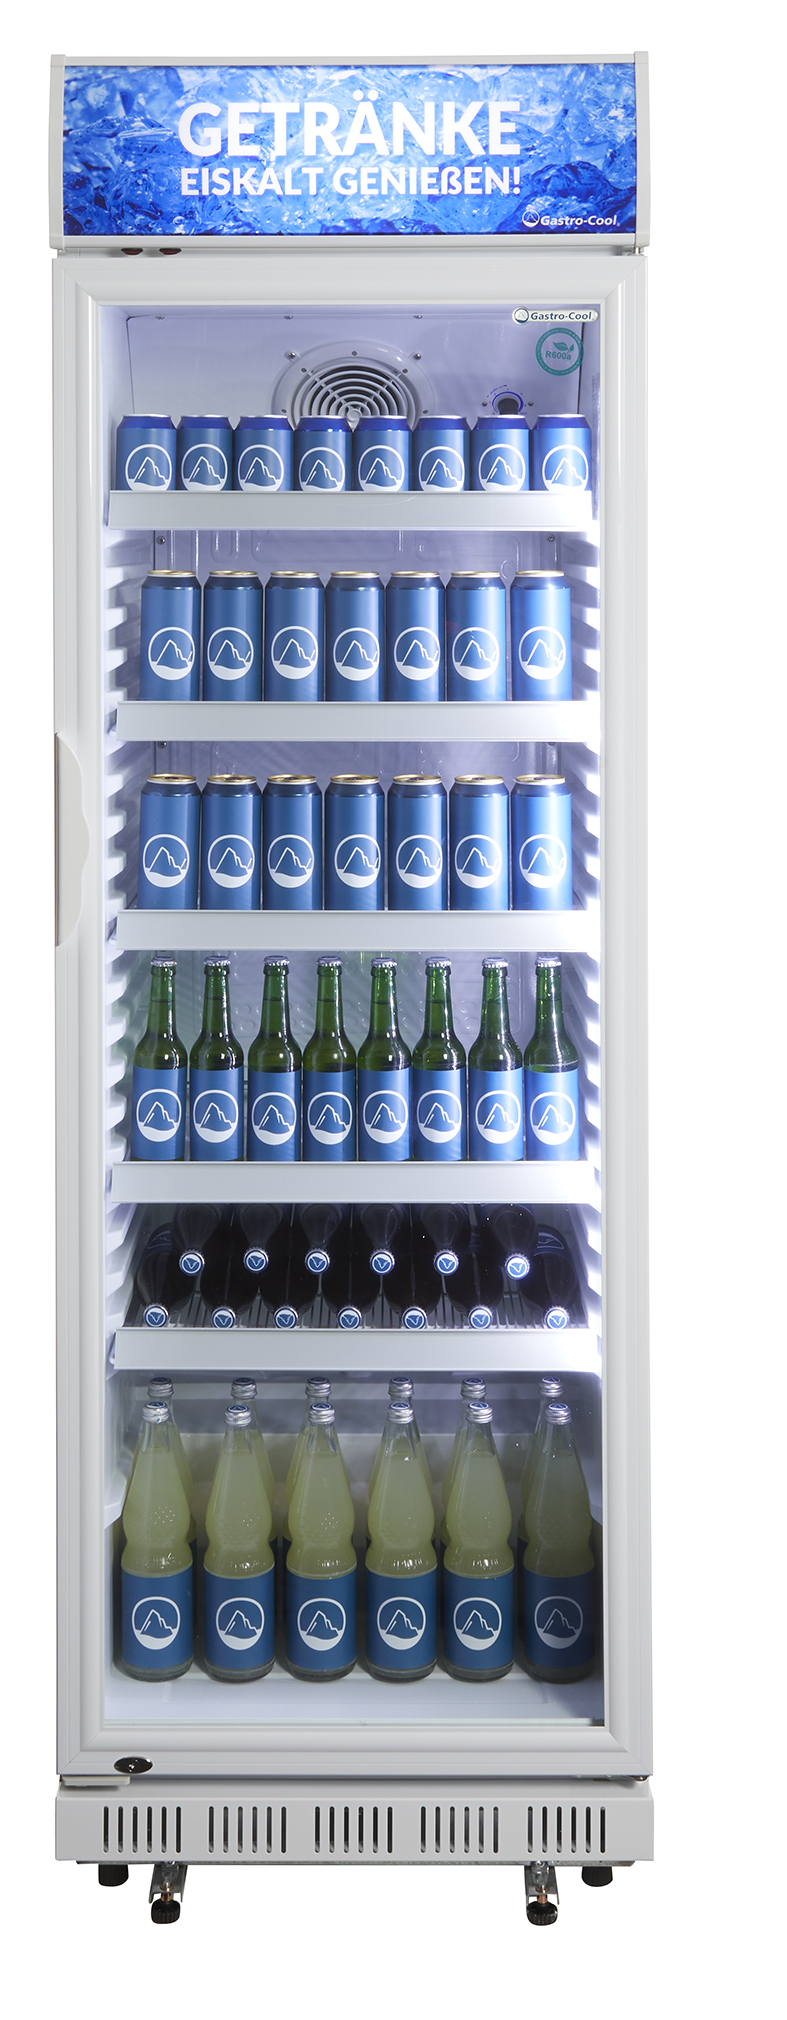 Gastro-Cool - Glastürkühlschrank mit Werbedisplay - weiß - GCDC400 - Frontansicht gefüllt